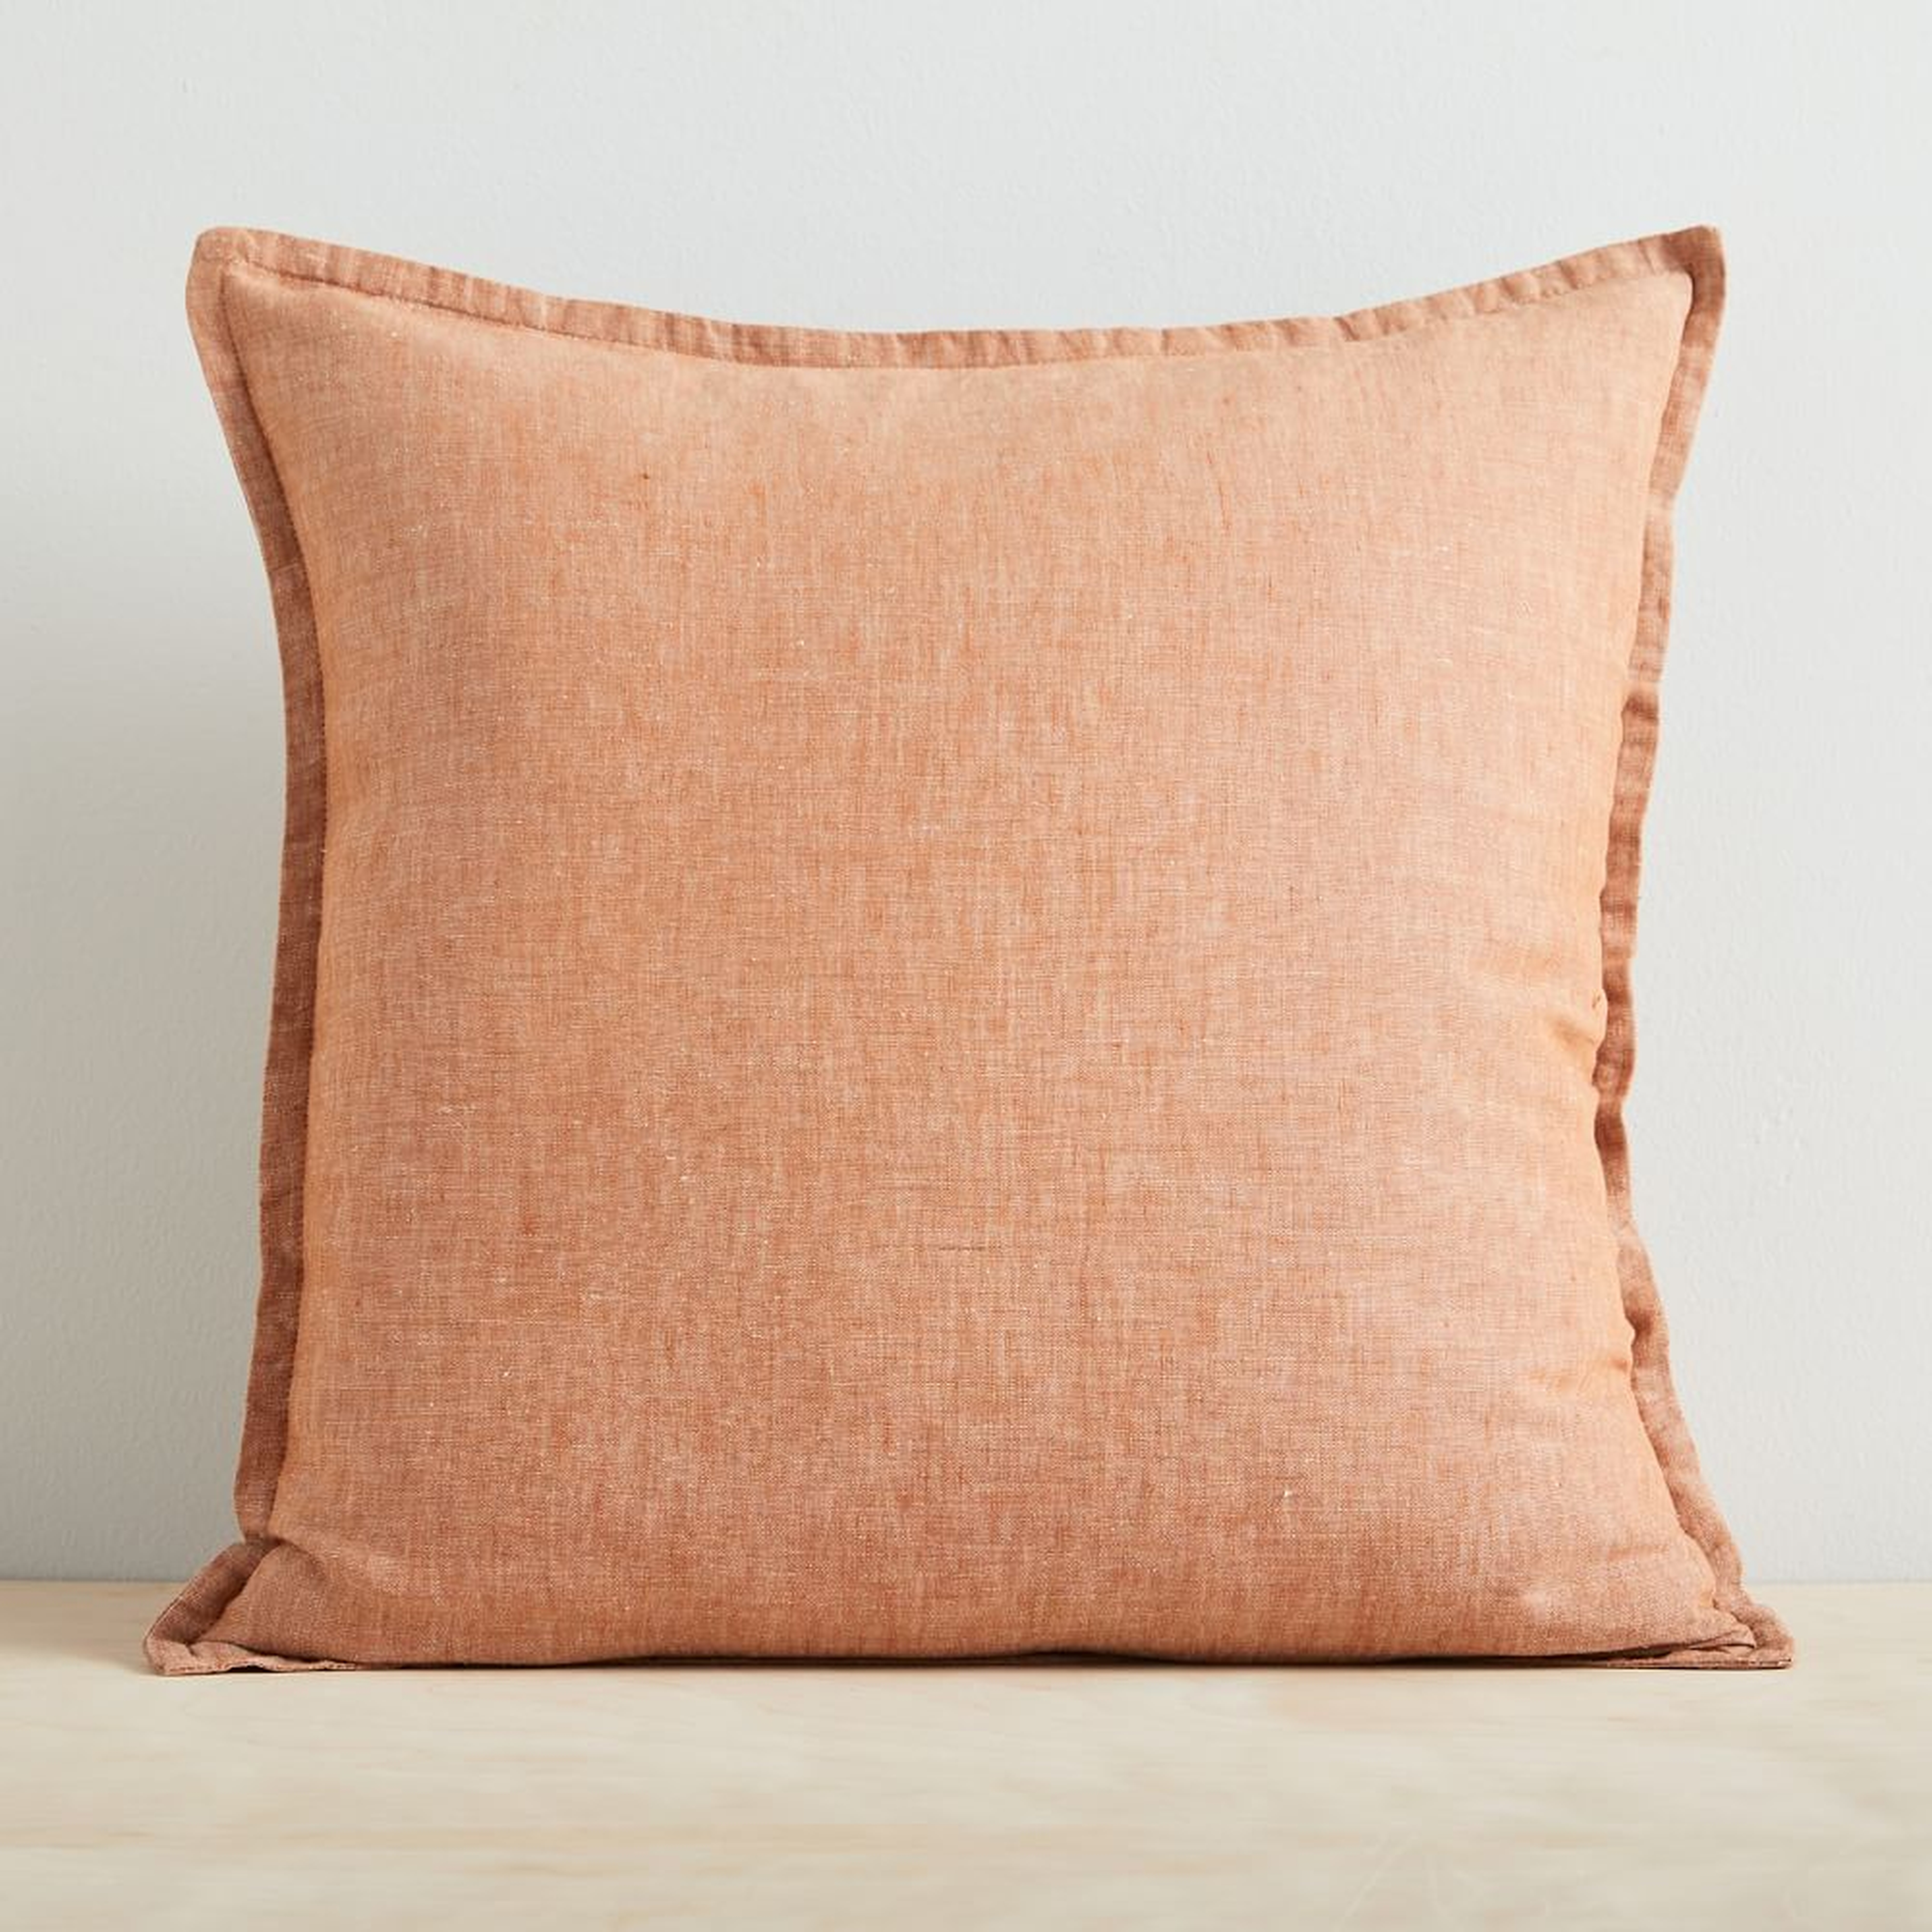 European Flax Linen Pillow Cover, 20"x20", Terracotta Melange - West Elm